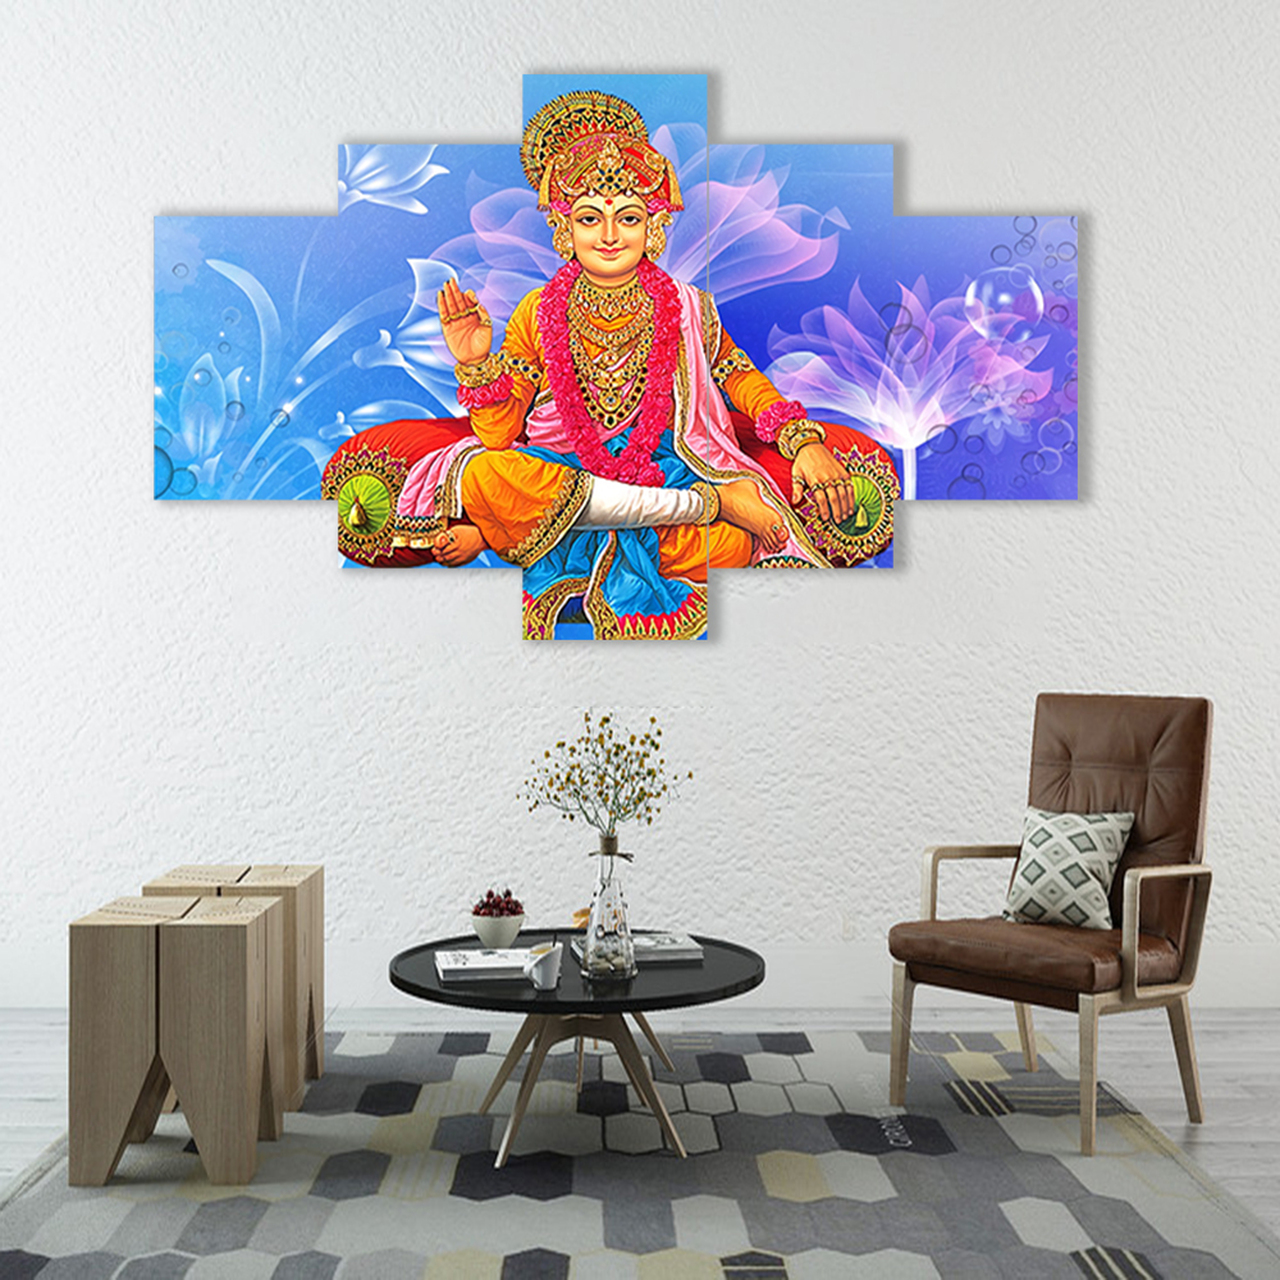 lord swaminarayan 5 pices peinture sur toile impression sur toile toile art pour la dcoration intrieuredwwjt